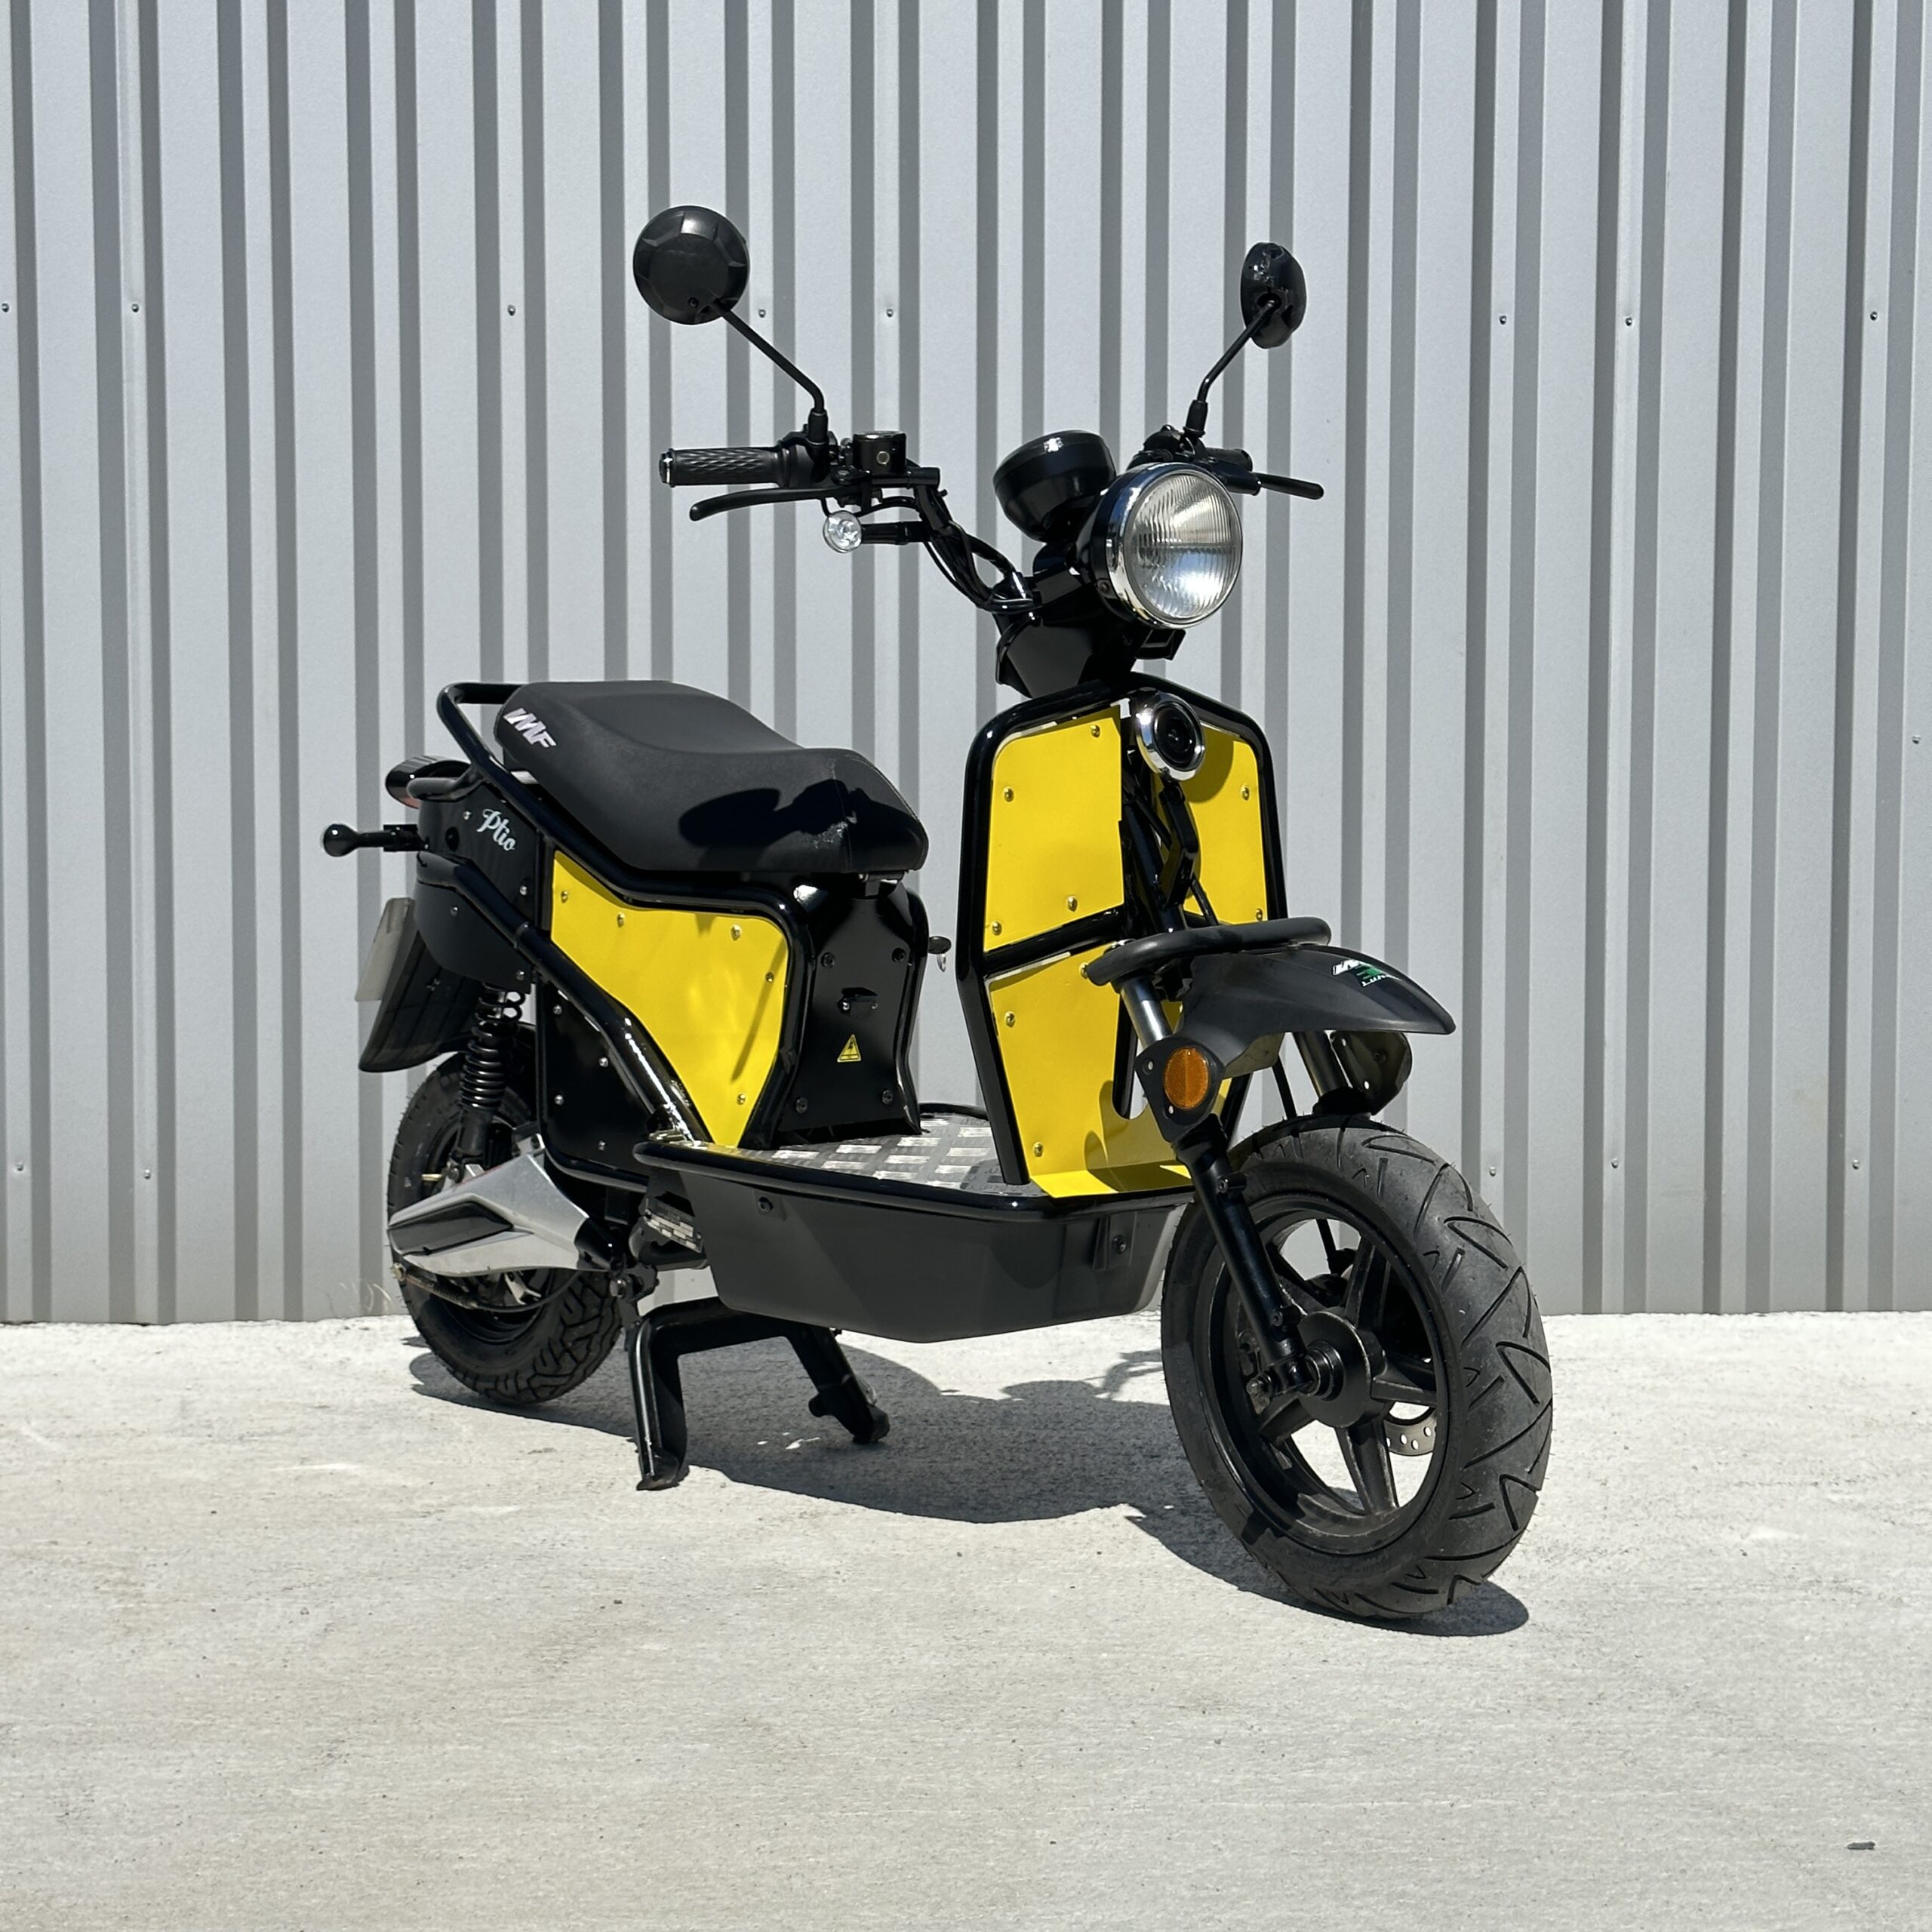 E-Ptio scooter électrique français reconditionné de la marque IMF Industrie, scooter utilisé par les Dominos Pizzas, scooter entièrement personnalisable, coloris jaune de trois-quarts